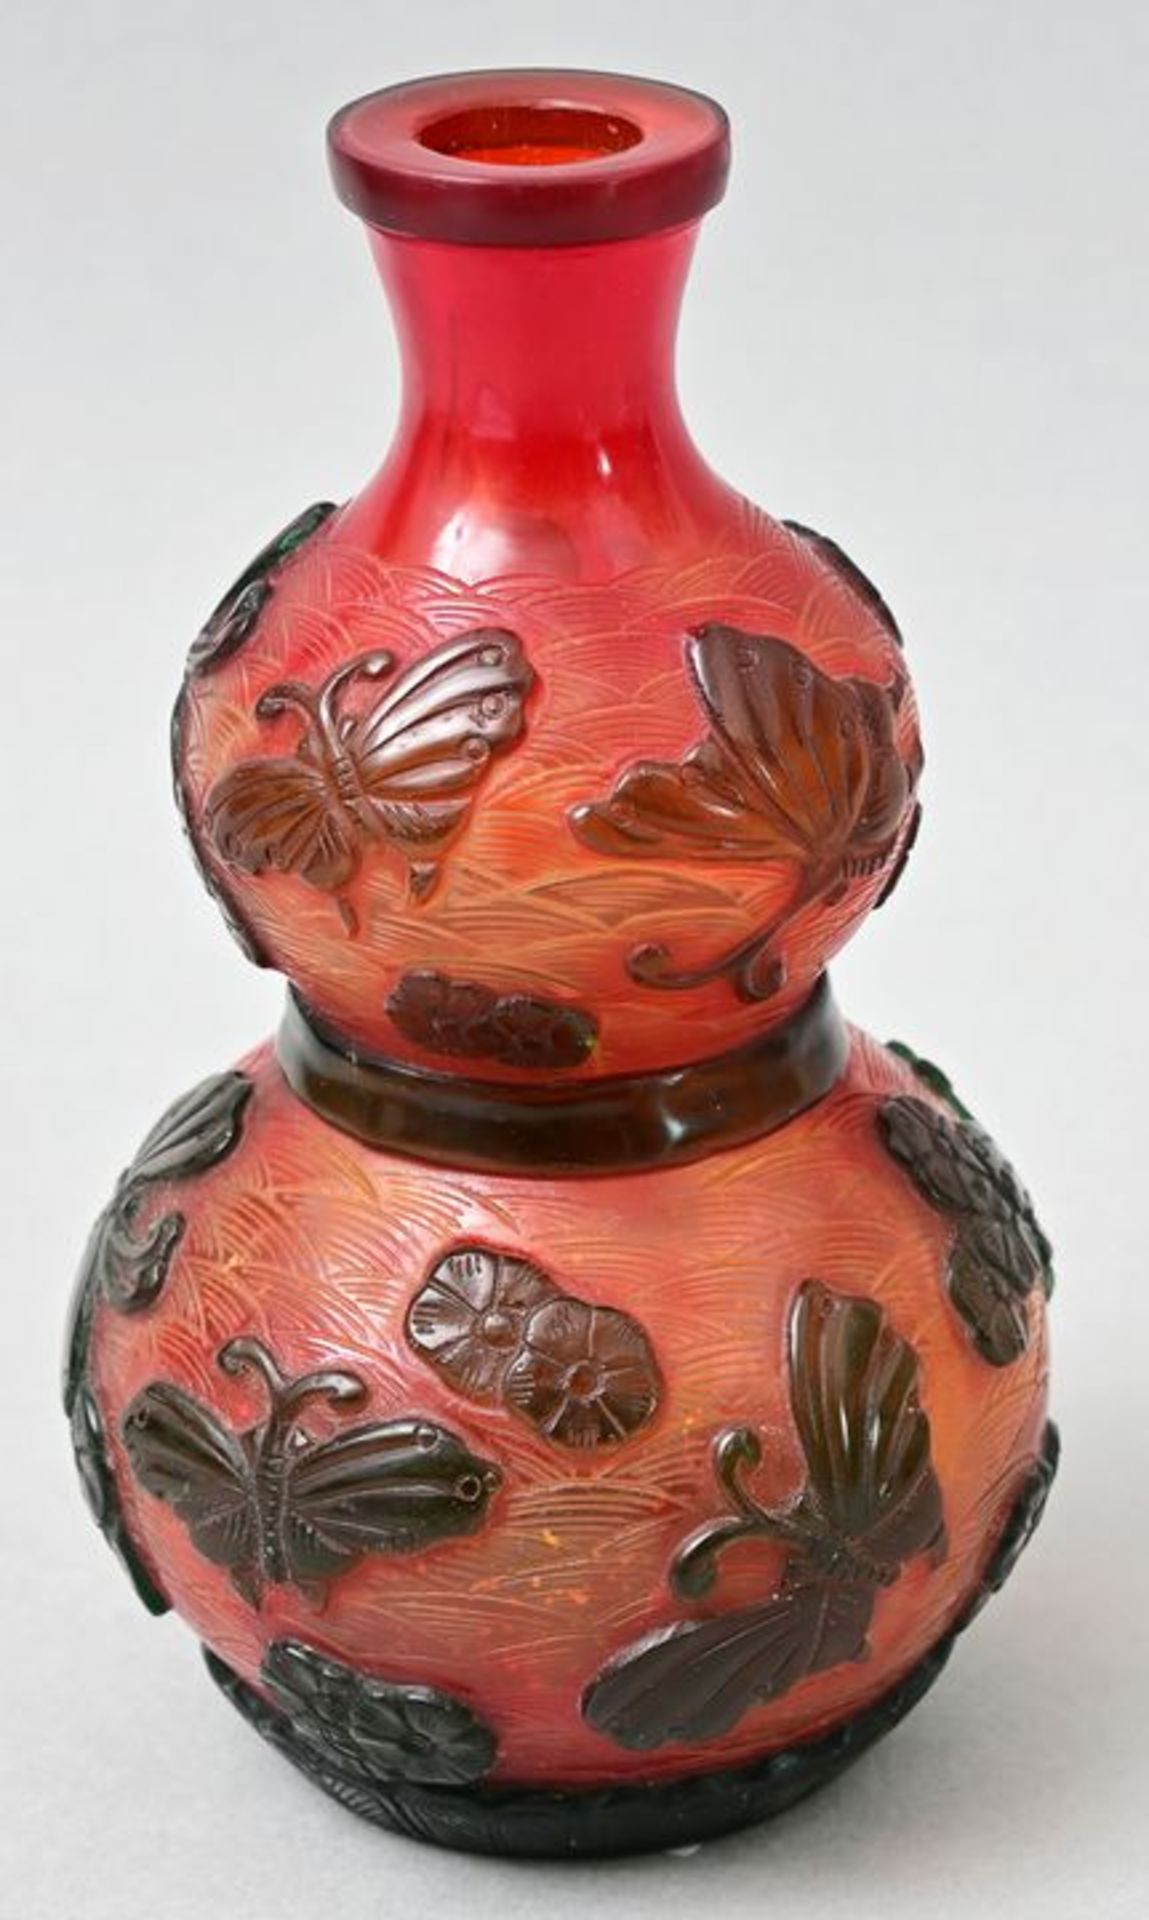 Flaschenvase Peking-Glas/ Peking glass bottle